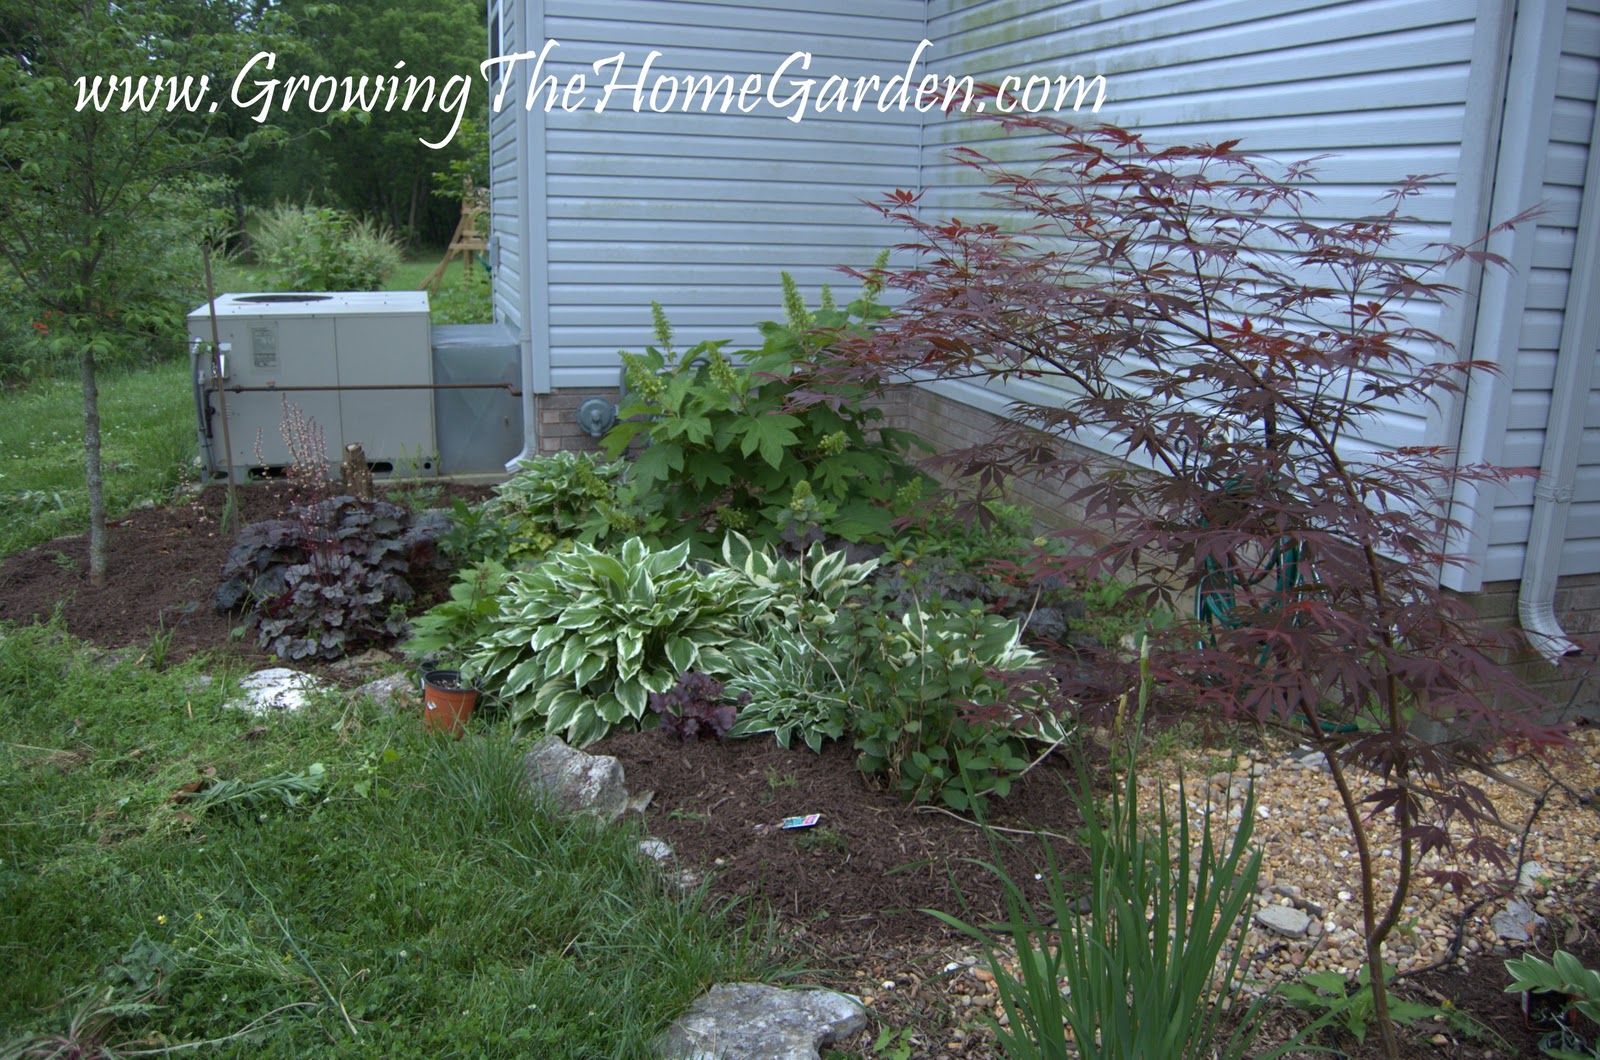 Growing The Home Garden: The Corner Shade Garden